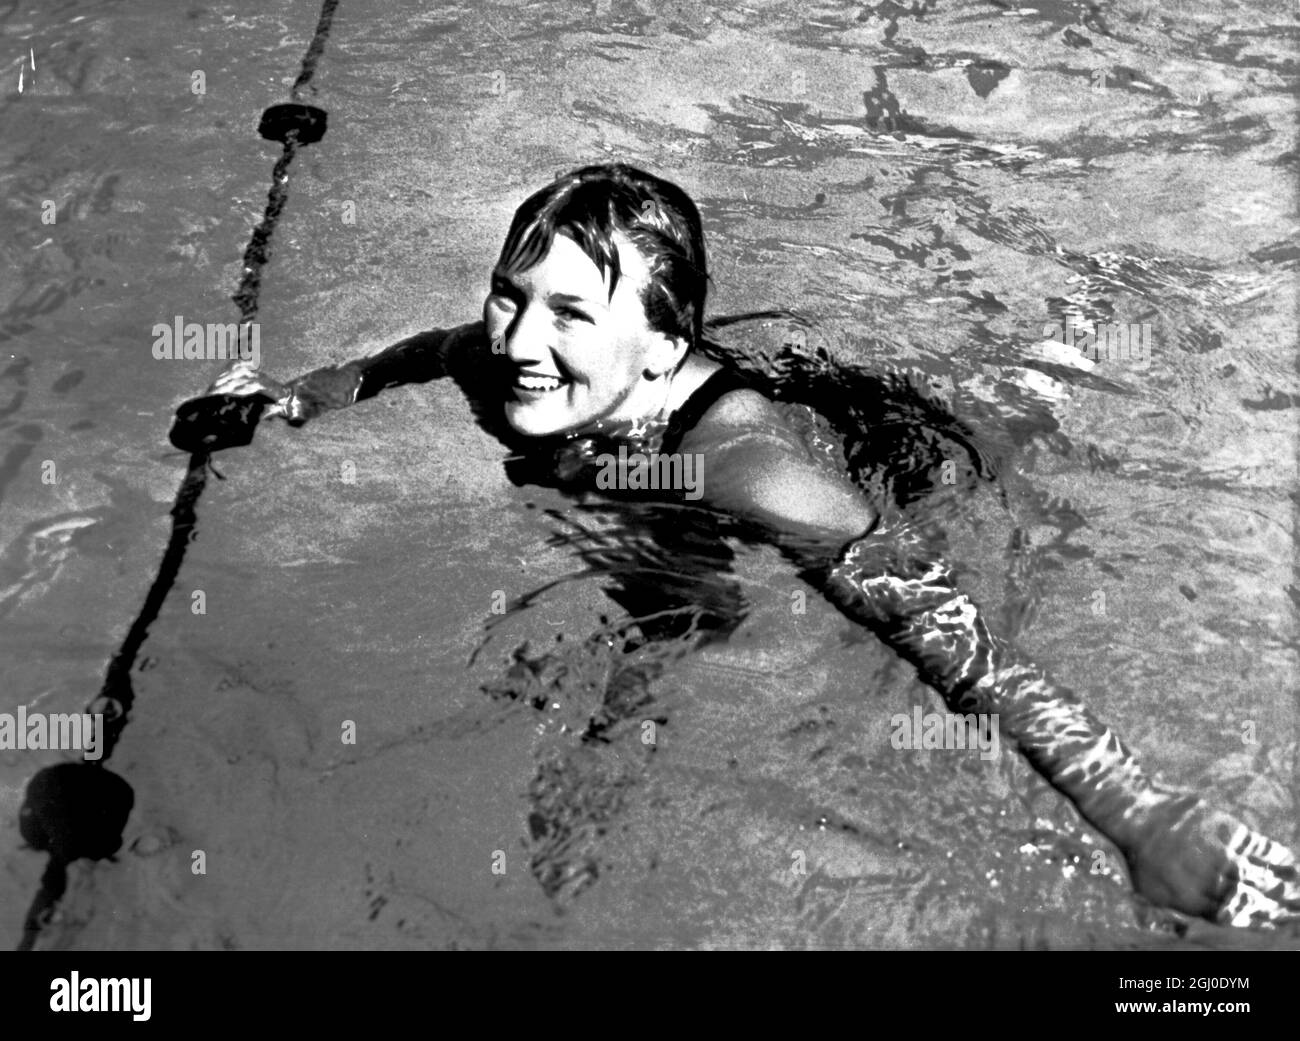 Loraine Crapp, die australische Schwimmerin, die fünf individuelle Weltrekorde brach und sich während des Schwimmens in North Sydney in zwei anderen Staffeln teilte. Sie ist eine Favoritin für die kommenden Olympischen Spiele in Melbourne im nächsten Monat. Oktober 1956 Stockfoto